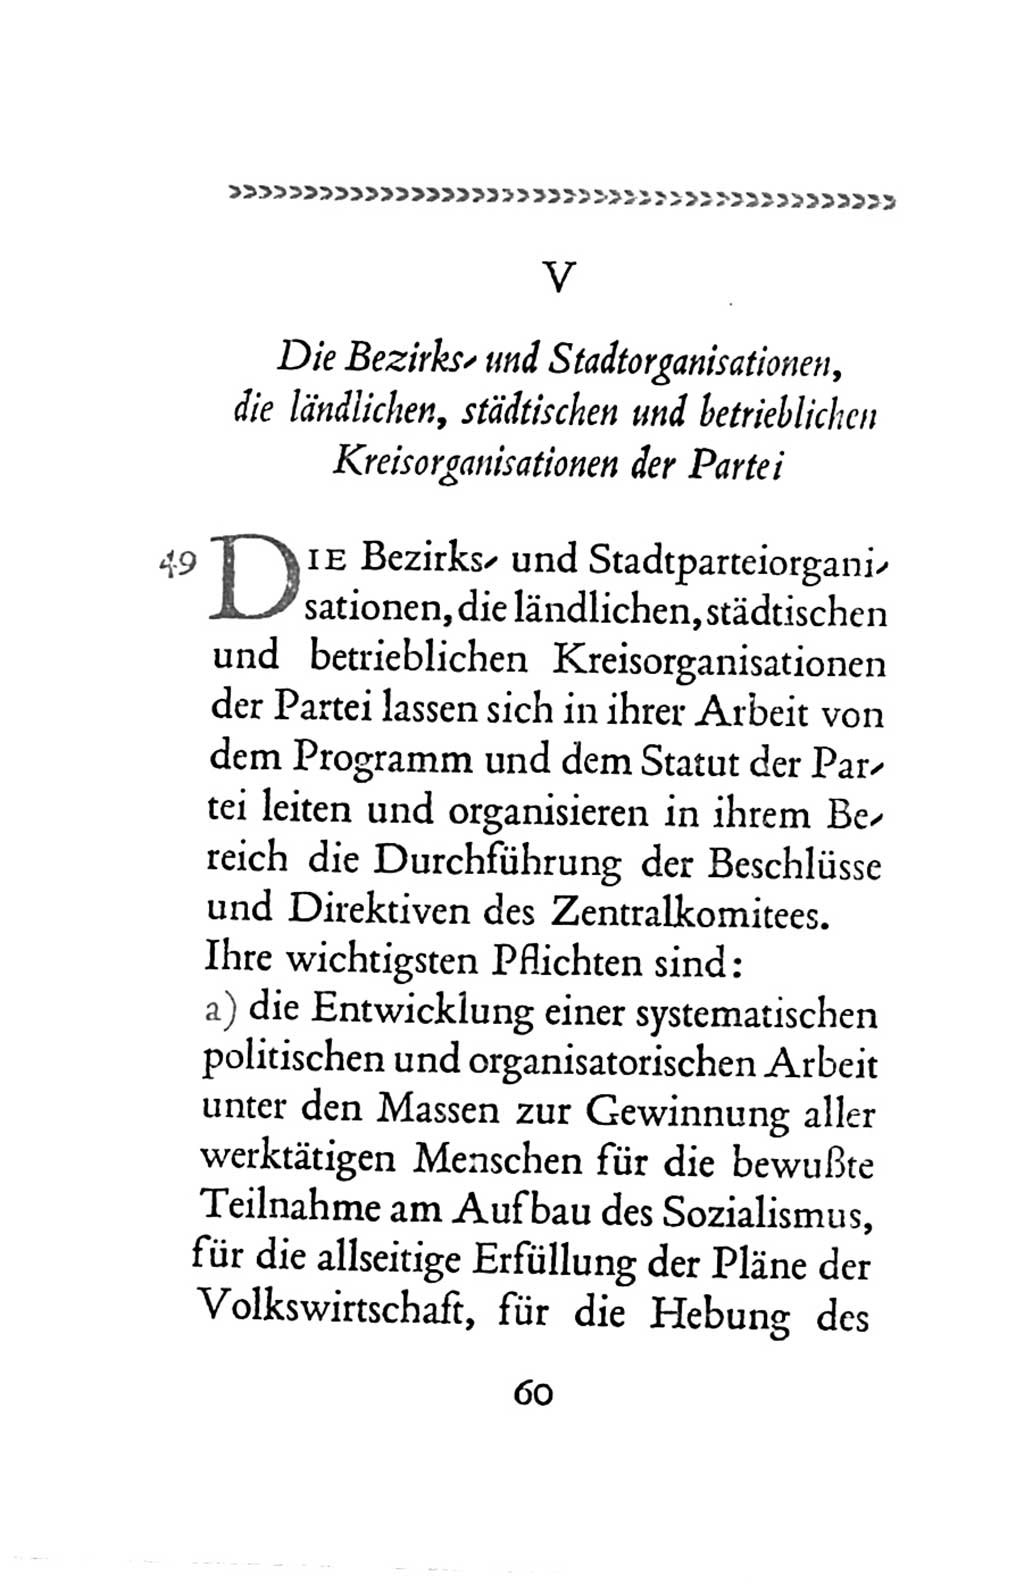 Statut der Sozialistischen Einheitspartei Deutschlands (SED) 1963, Seite 60 (St. SED DDR 1963, S. 60)